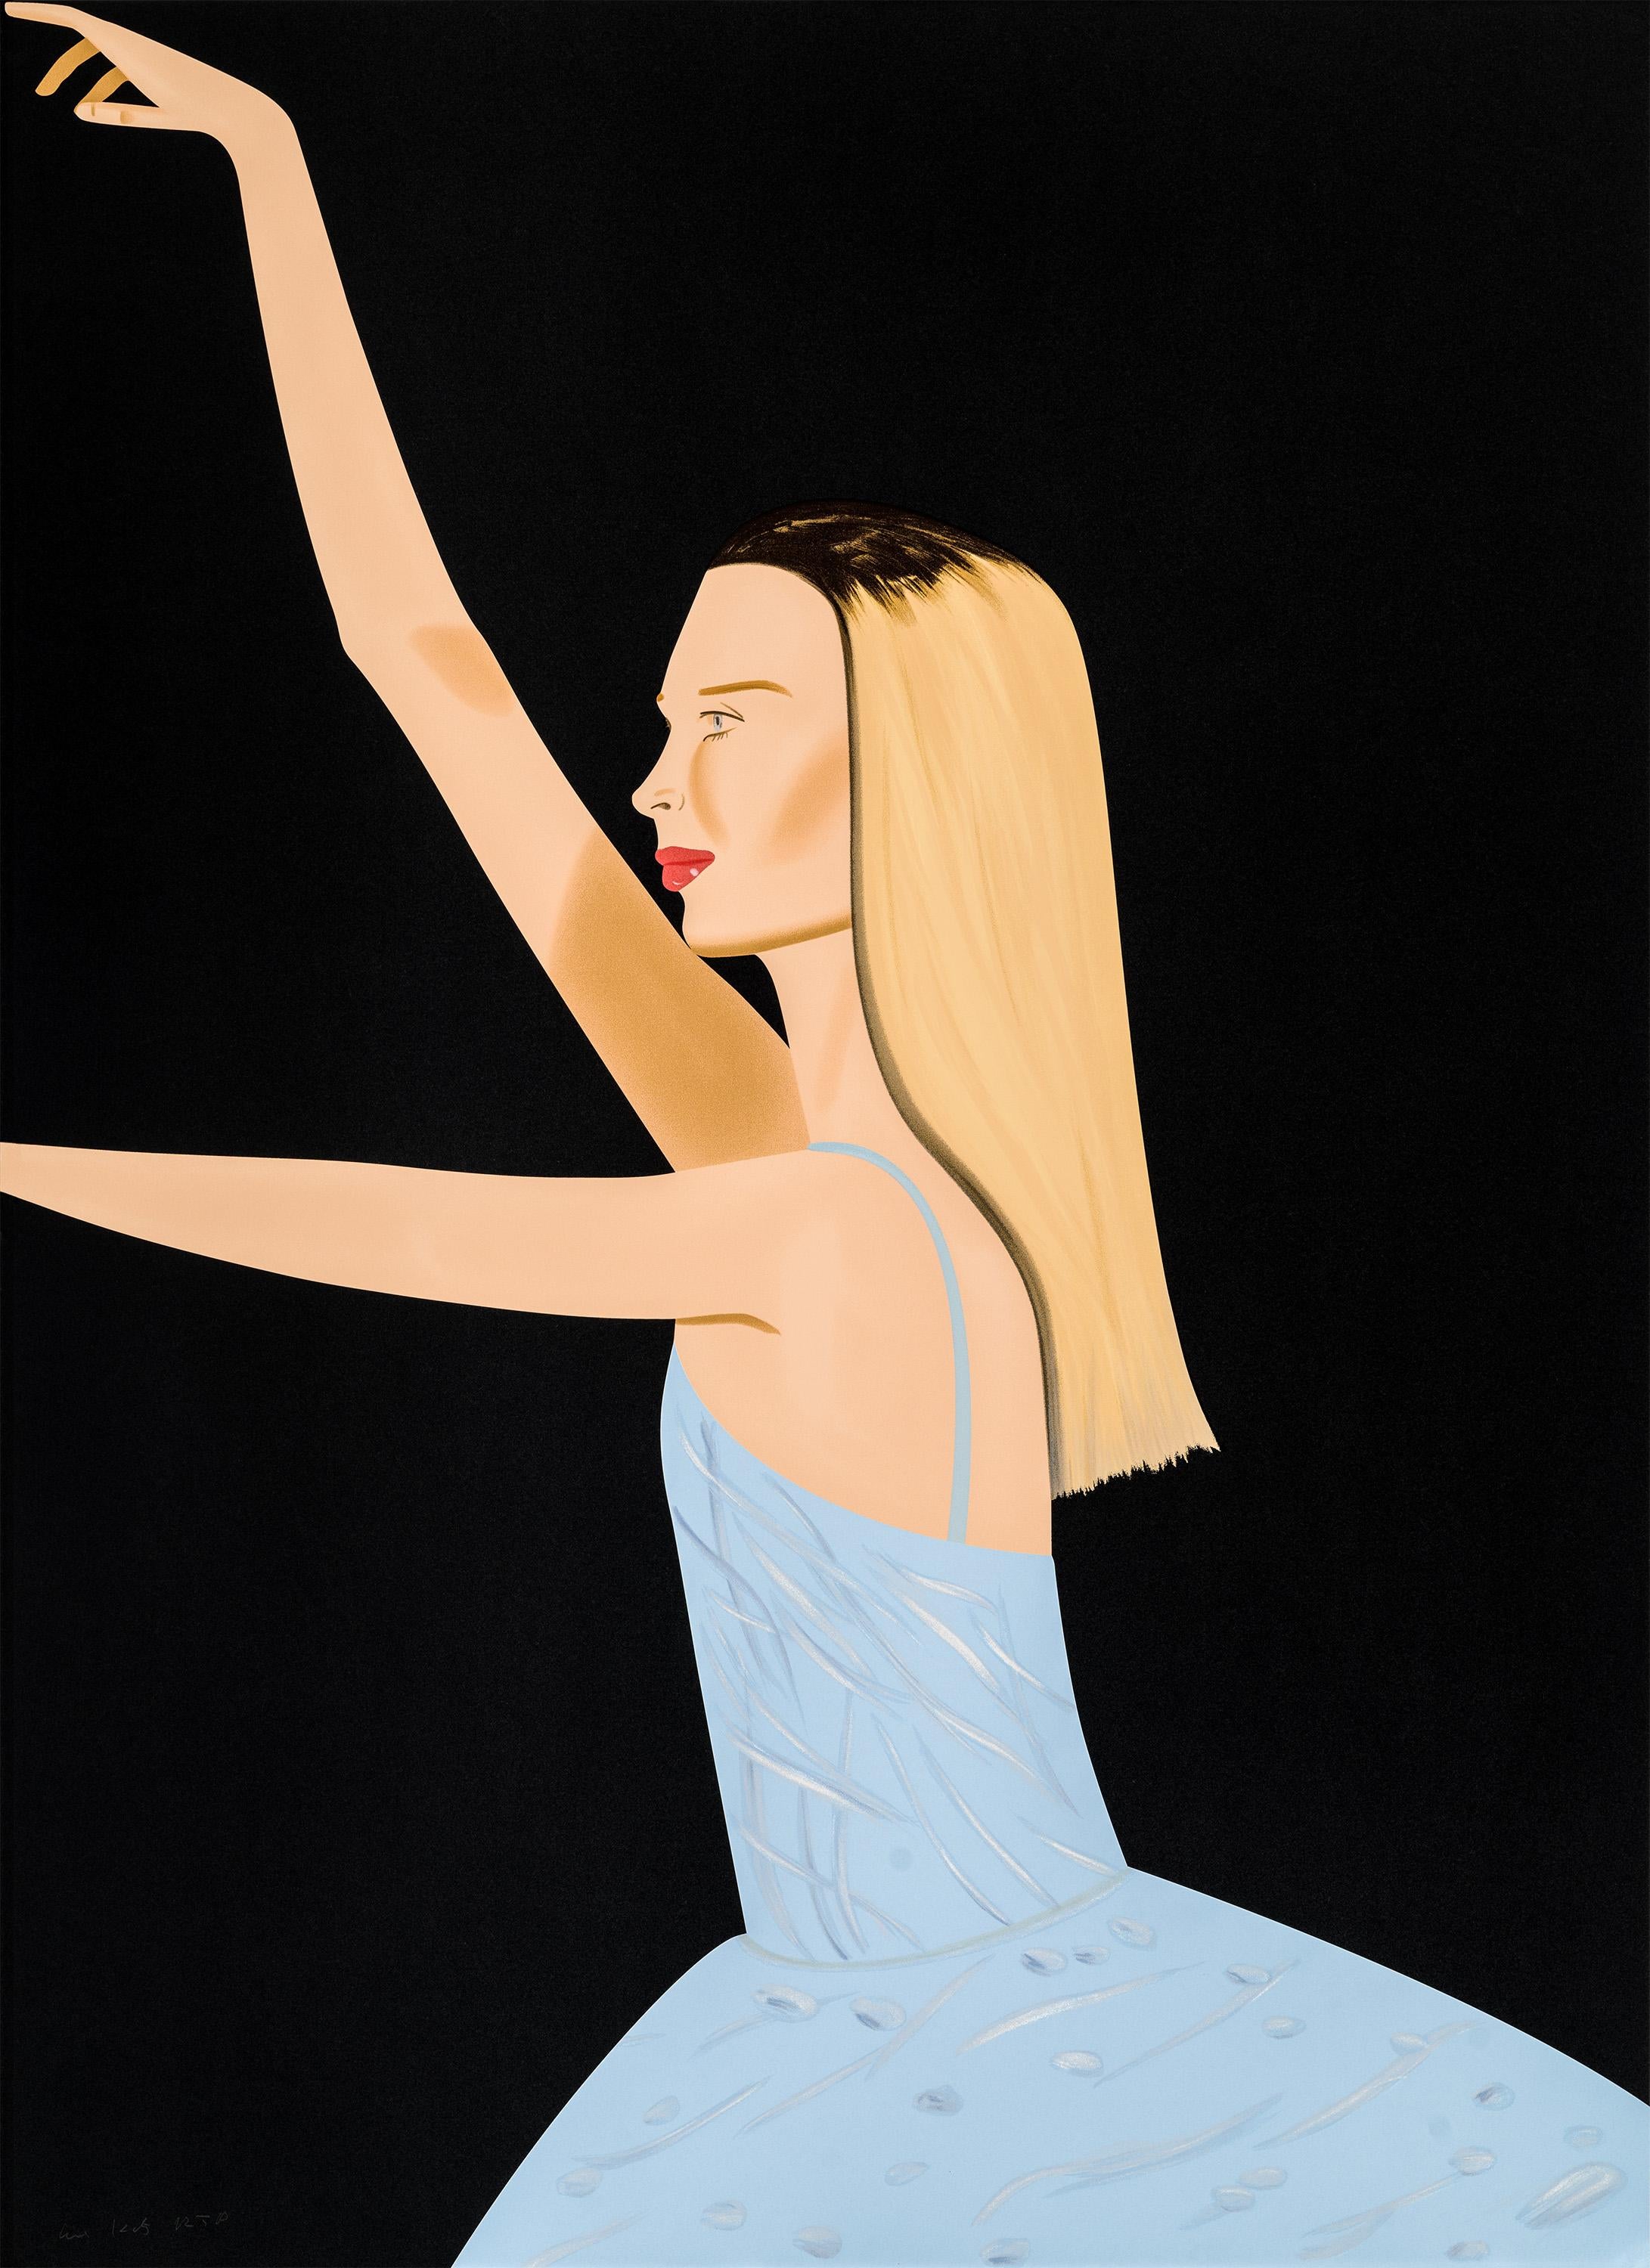 Dancer 2 - ballet, dancing, light blue, black, blonde, dress